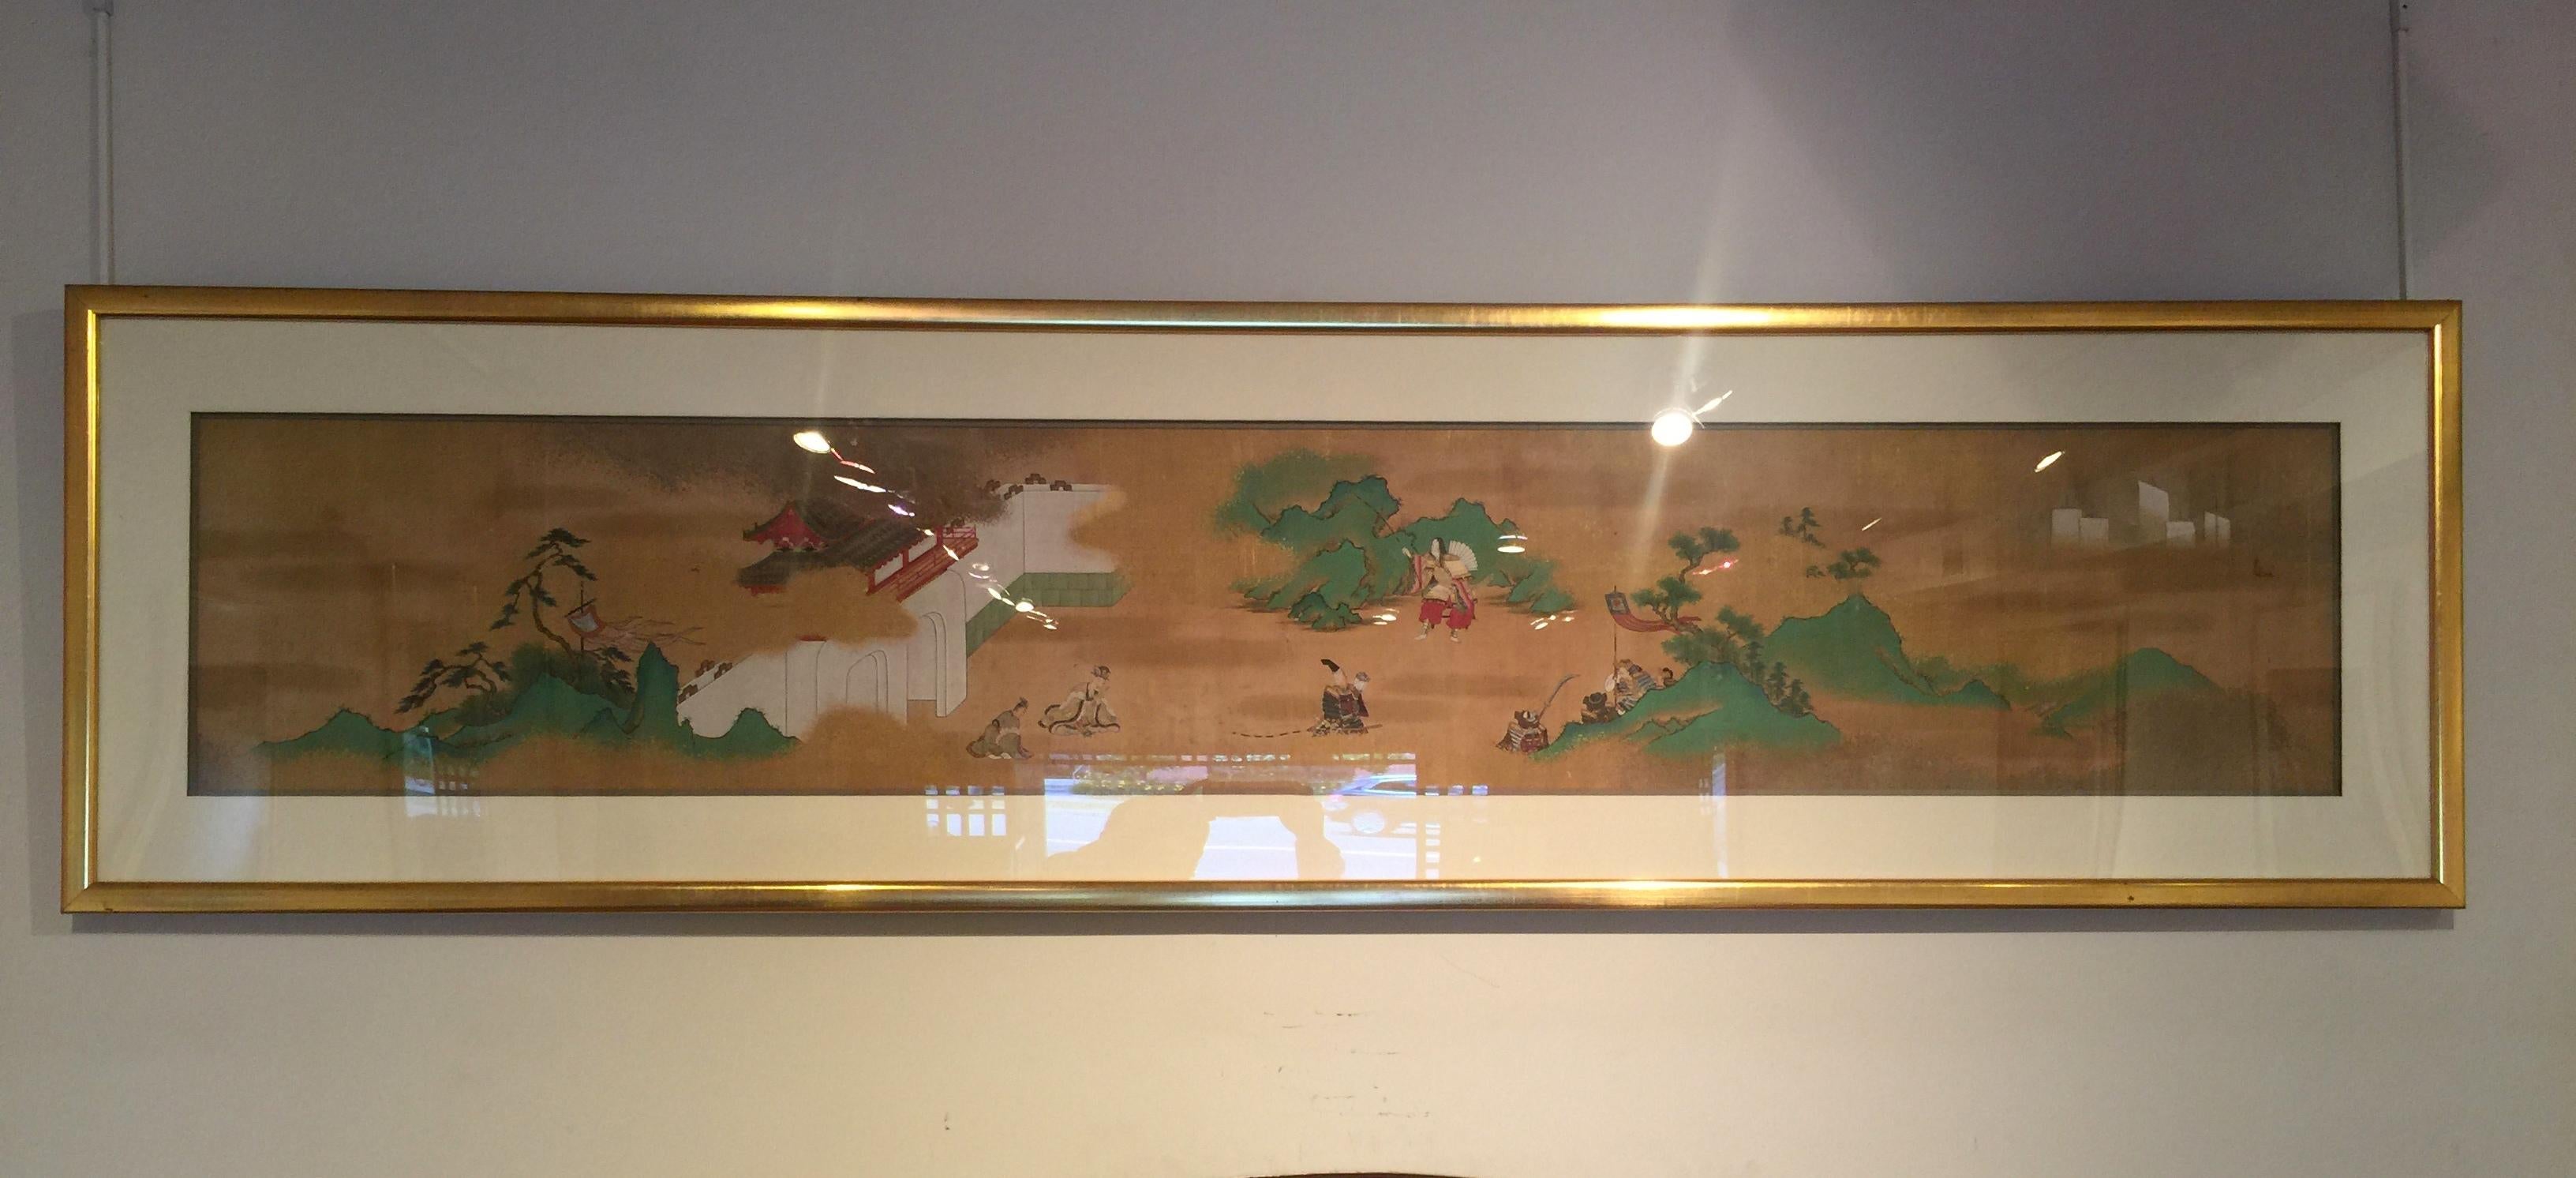 raffinierte japanische Pinselmalerei von Samurais und Bogenschützen in der Landschaft, ursprünglich ein Ausschnitt aus einer Handrolle.
 Tinte und Farbe auf Seide.  Konservierungsrahmen
Gesamtgröße:  74